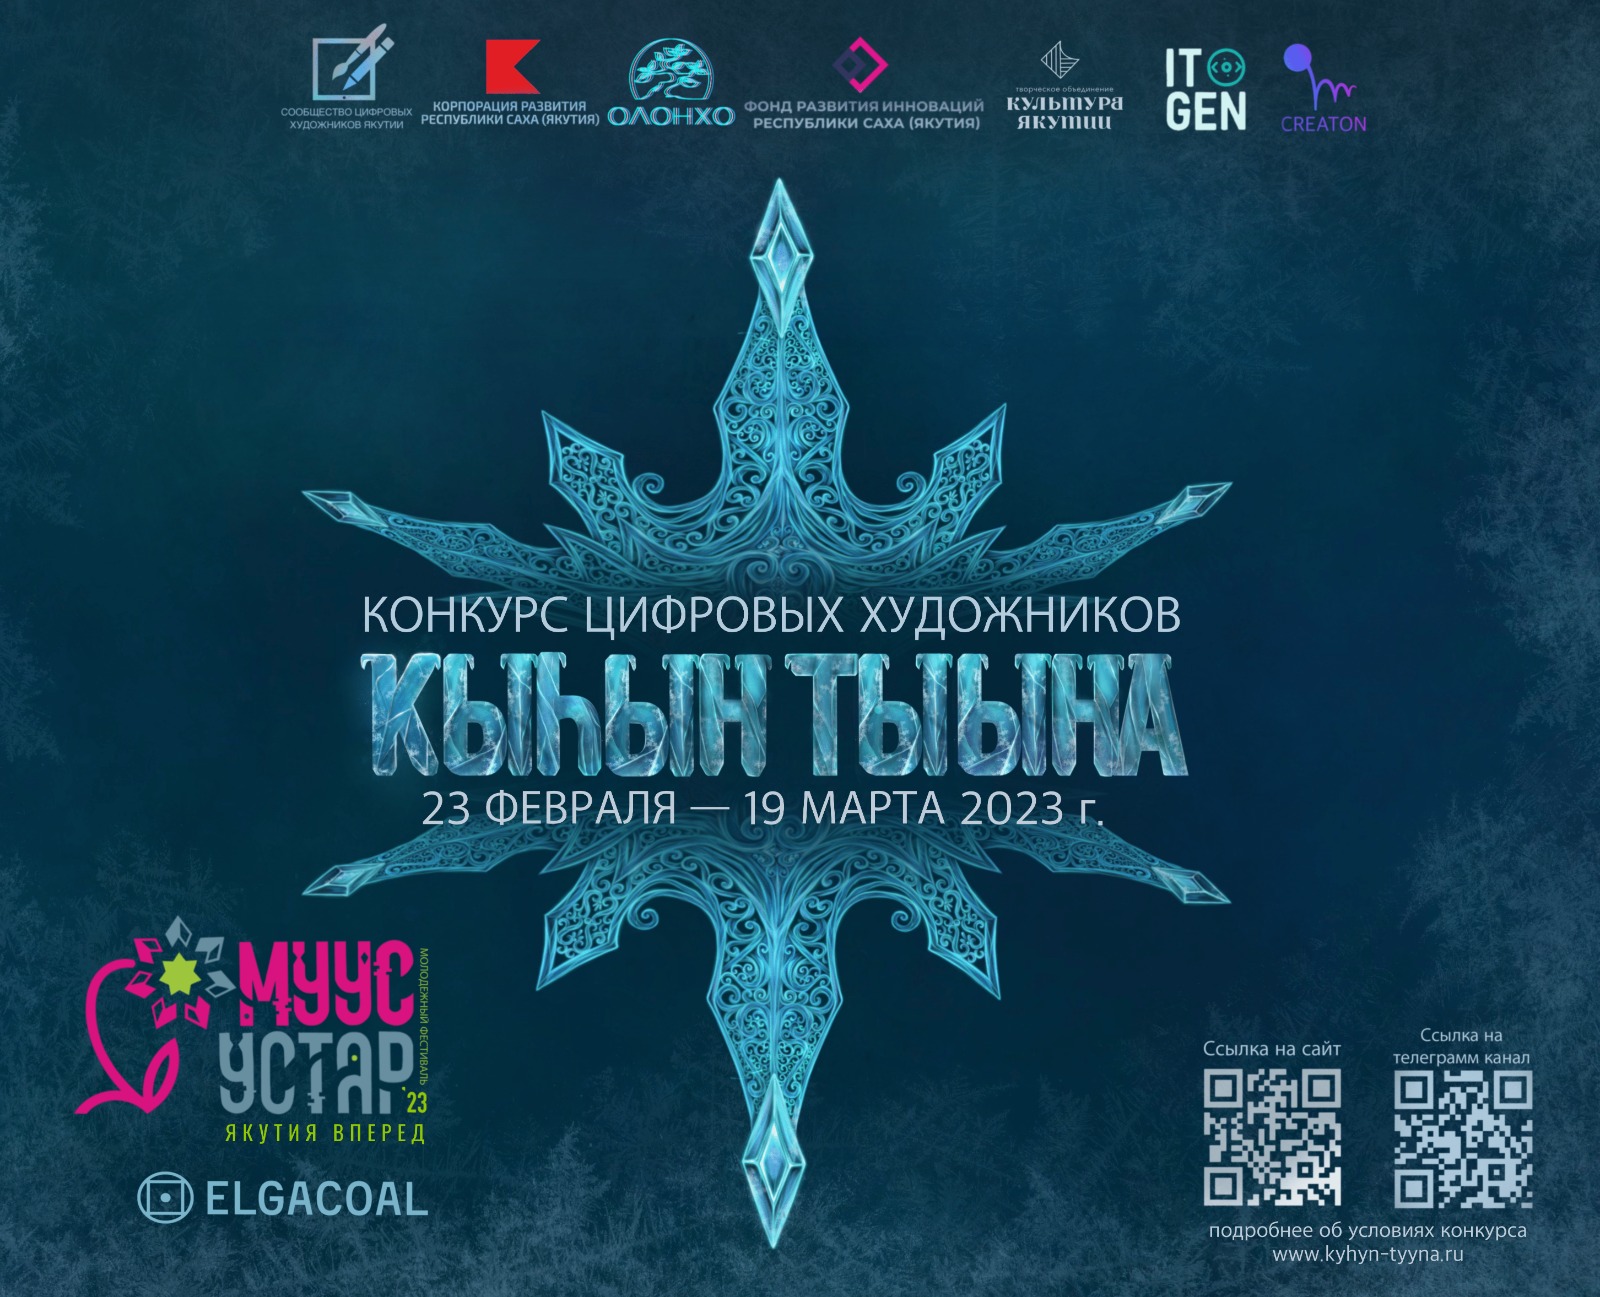 В Якутии стартовал конкурс цифровых художников «Дыхание зимы» фестиваля Муус устар